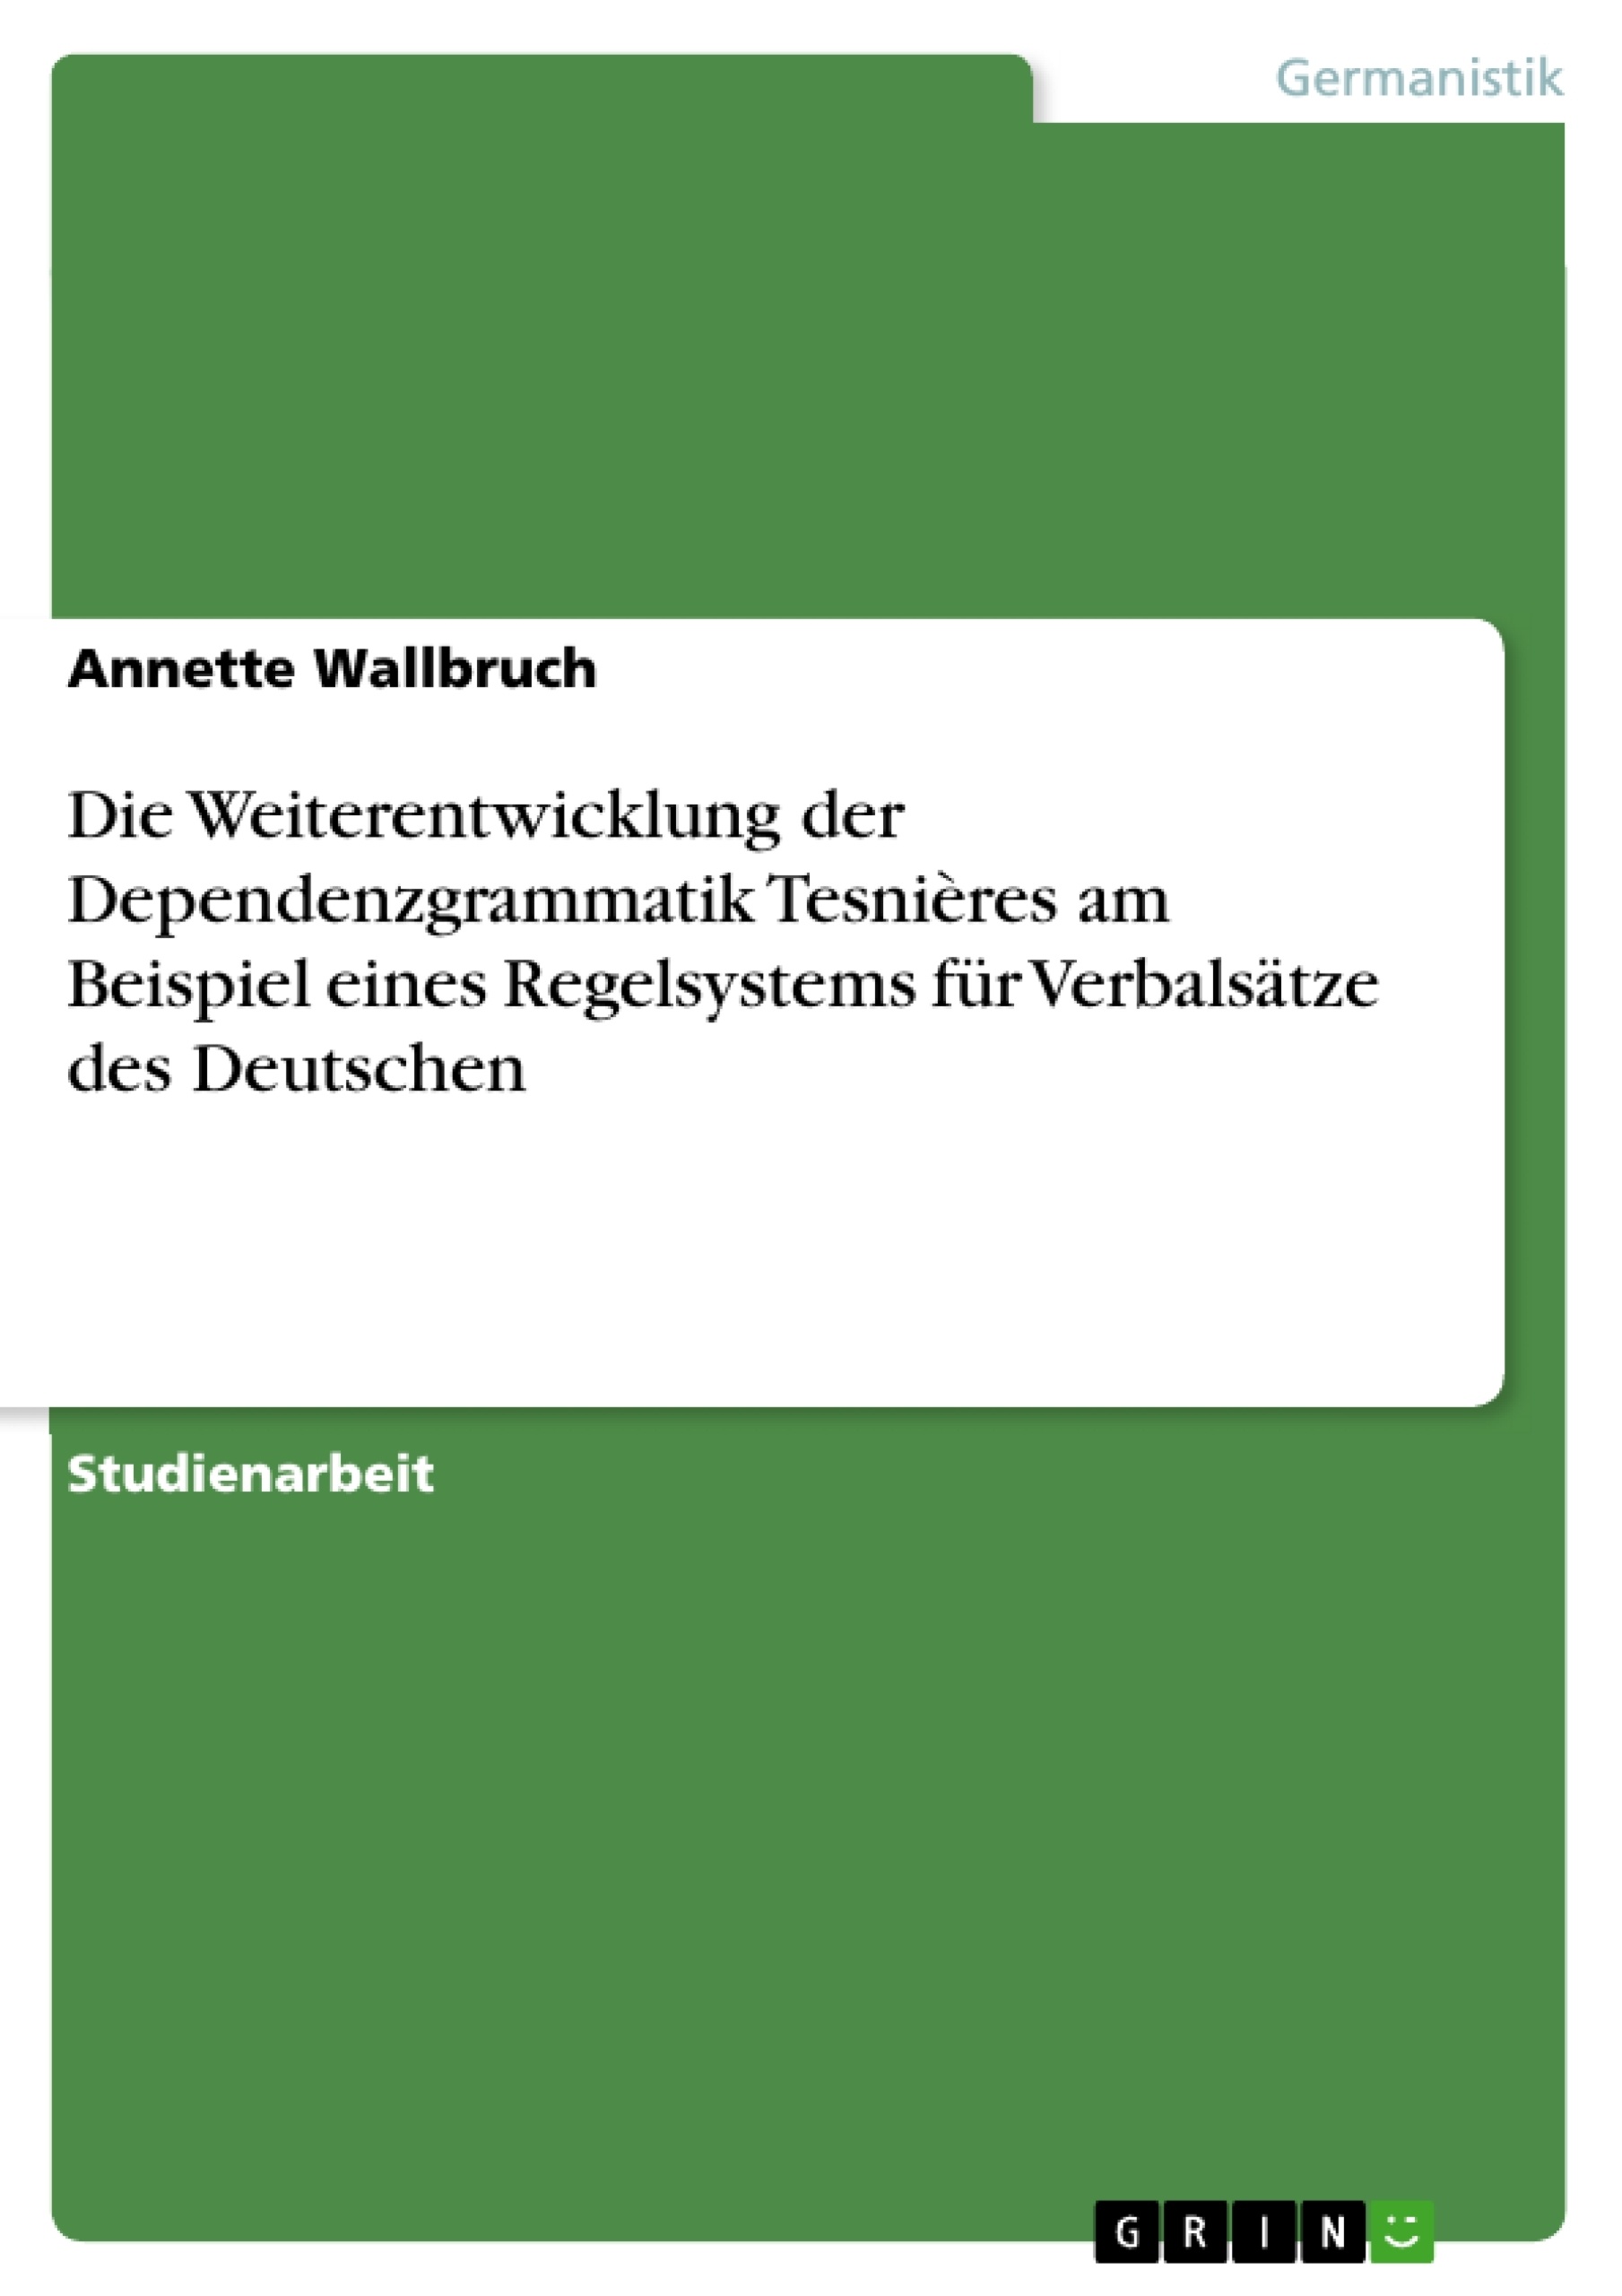 Title: Die Weiterentwicklung der Dependenzgrammatik Tesnières am Beispiel eines Regelsystems für Verbalsätze des Deutschen